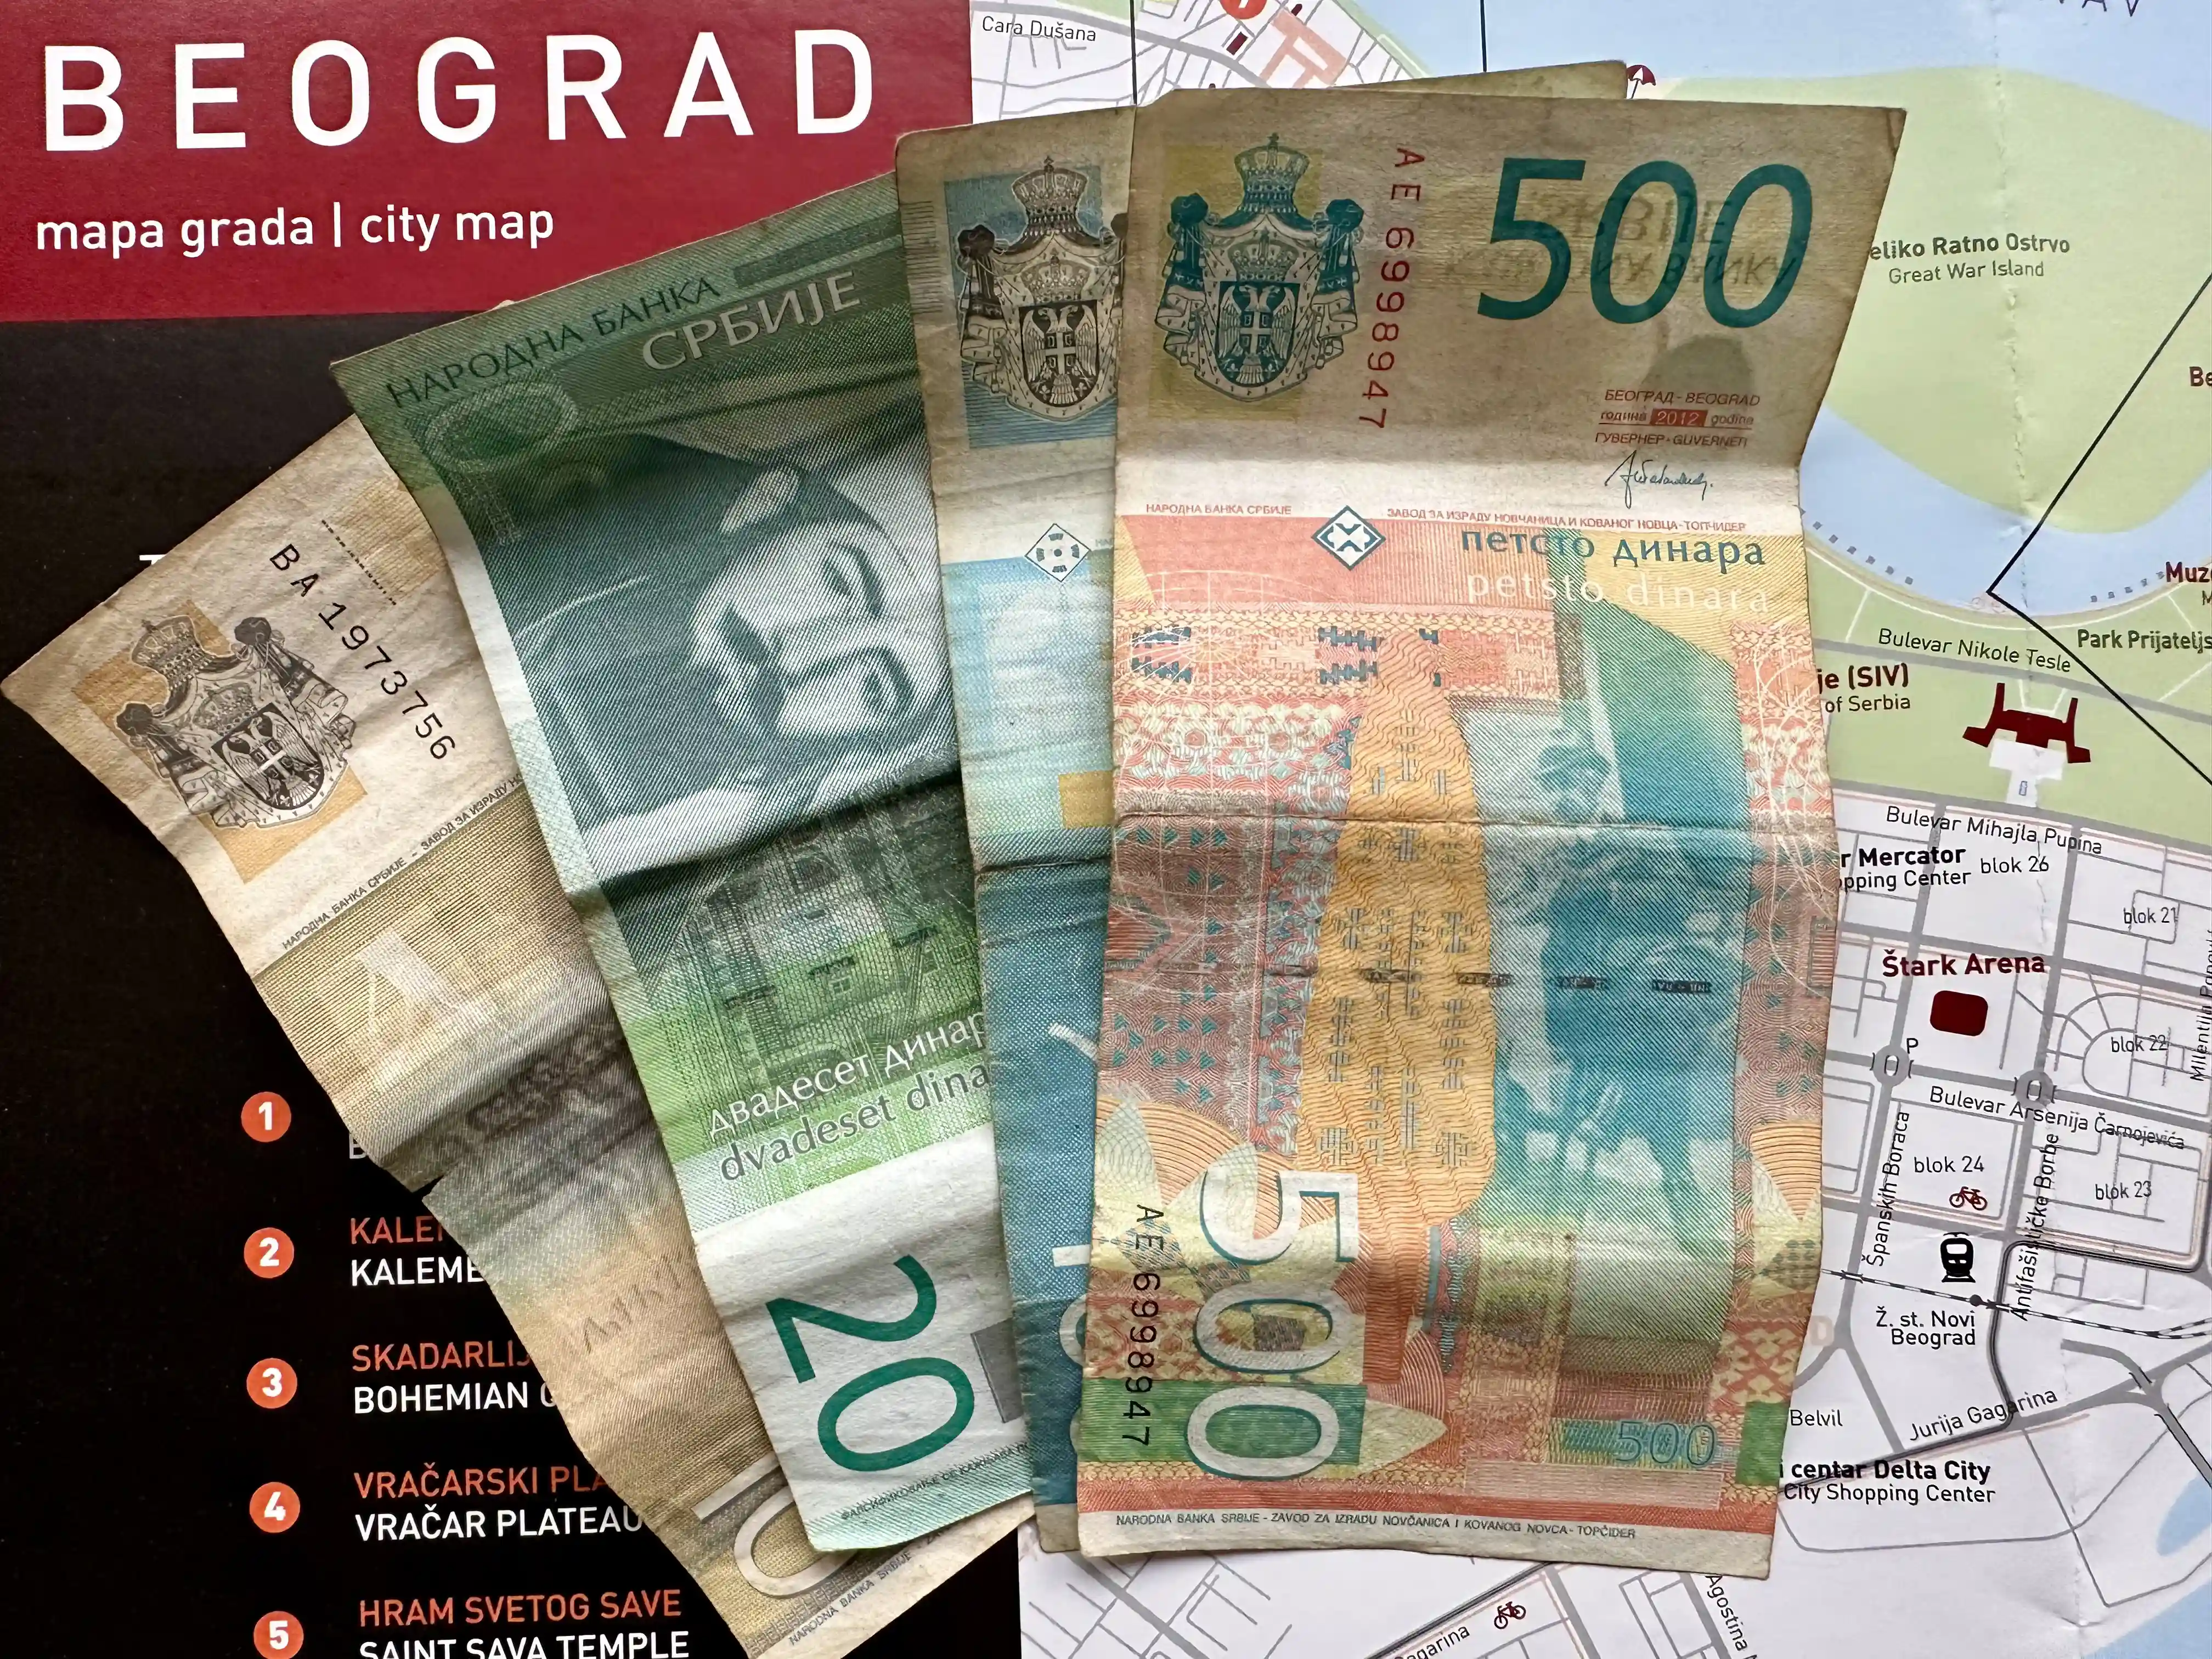 Imagine Belgrade currency in Belgrade